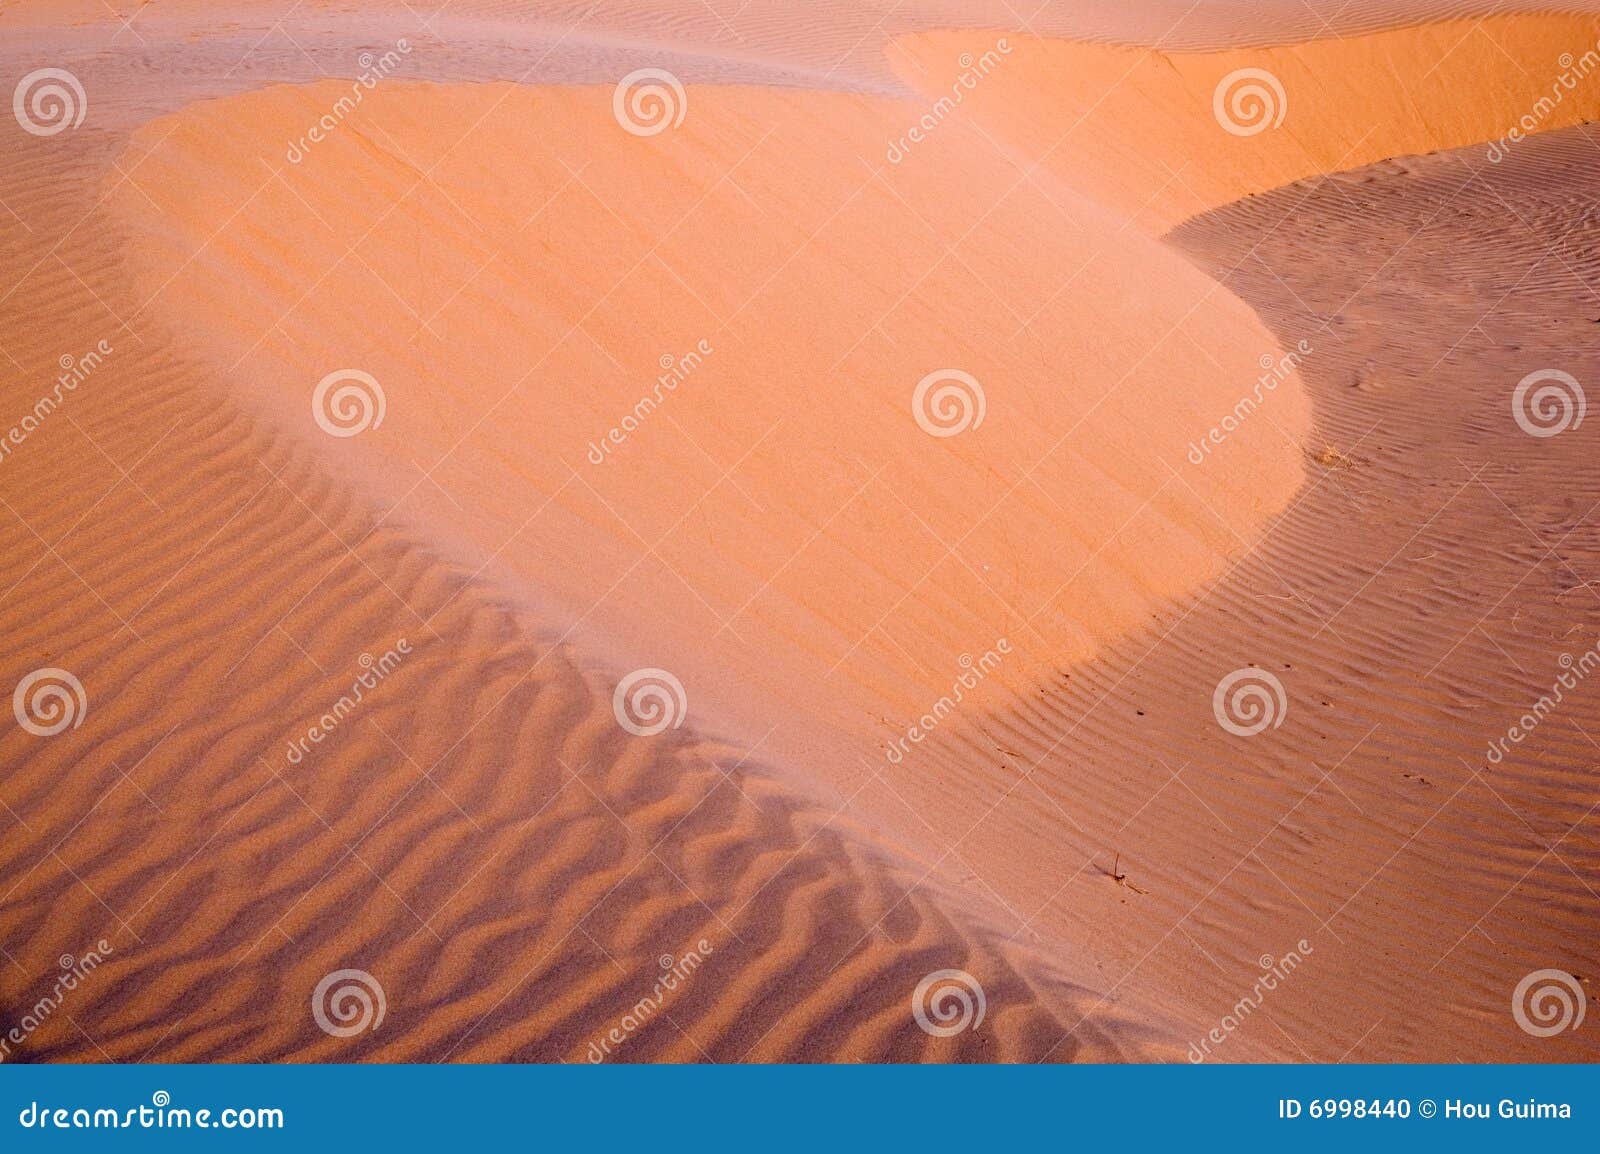 Mening van futlooze tropische woestijn